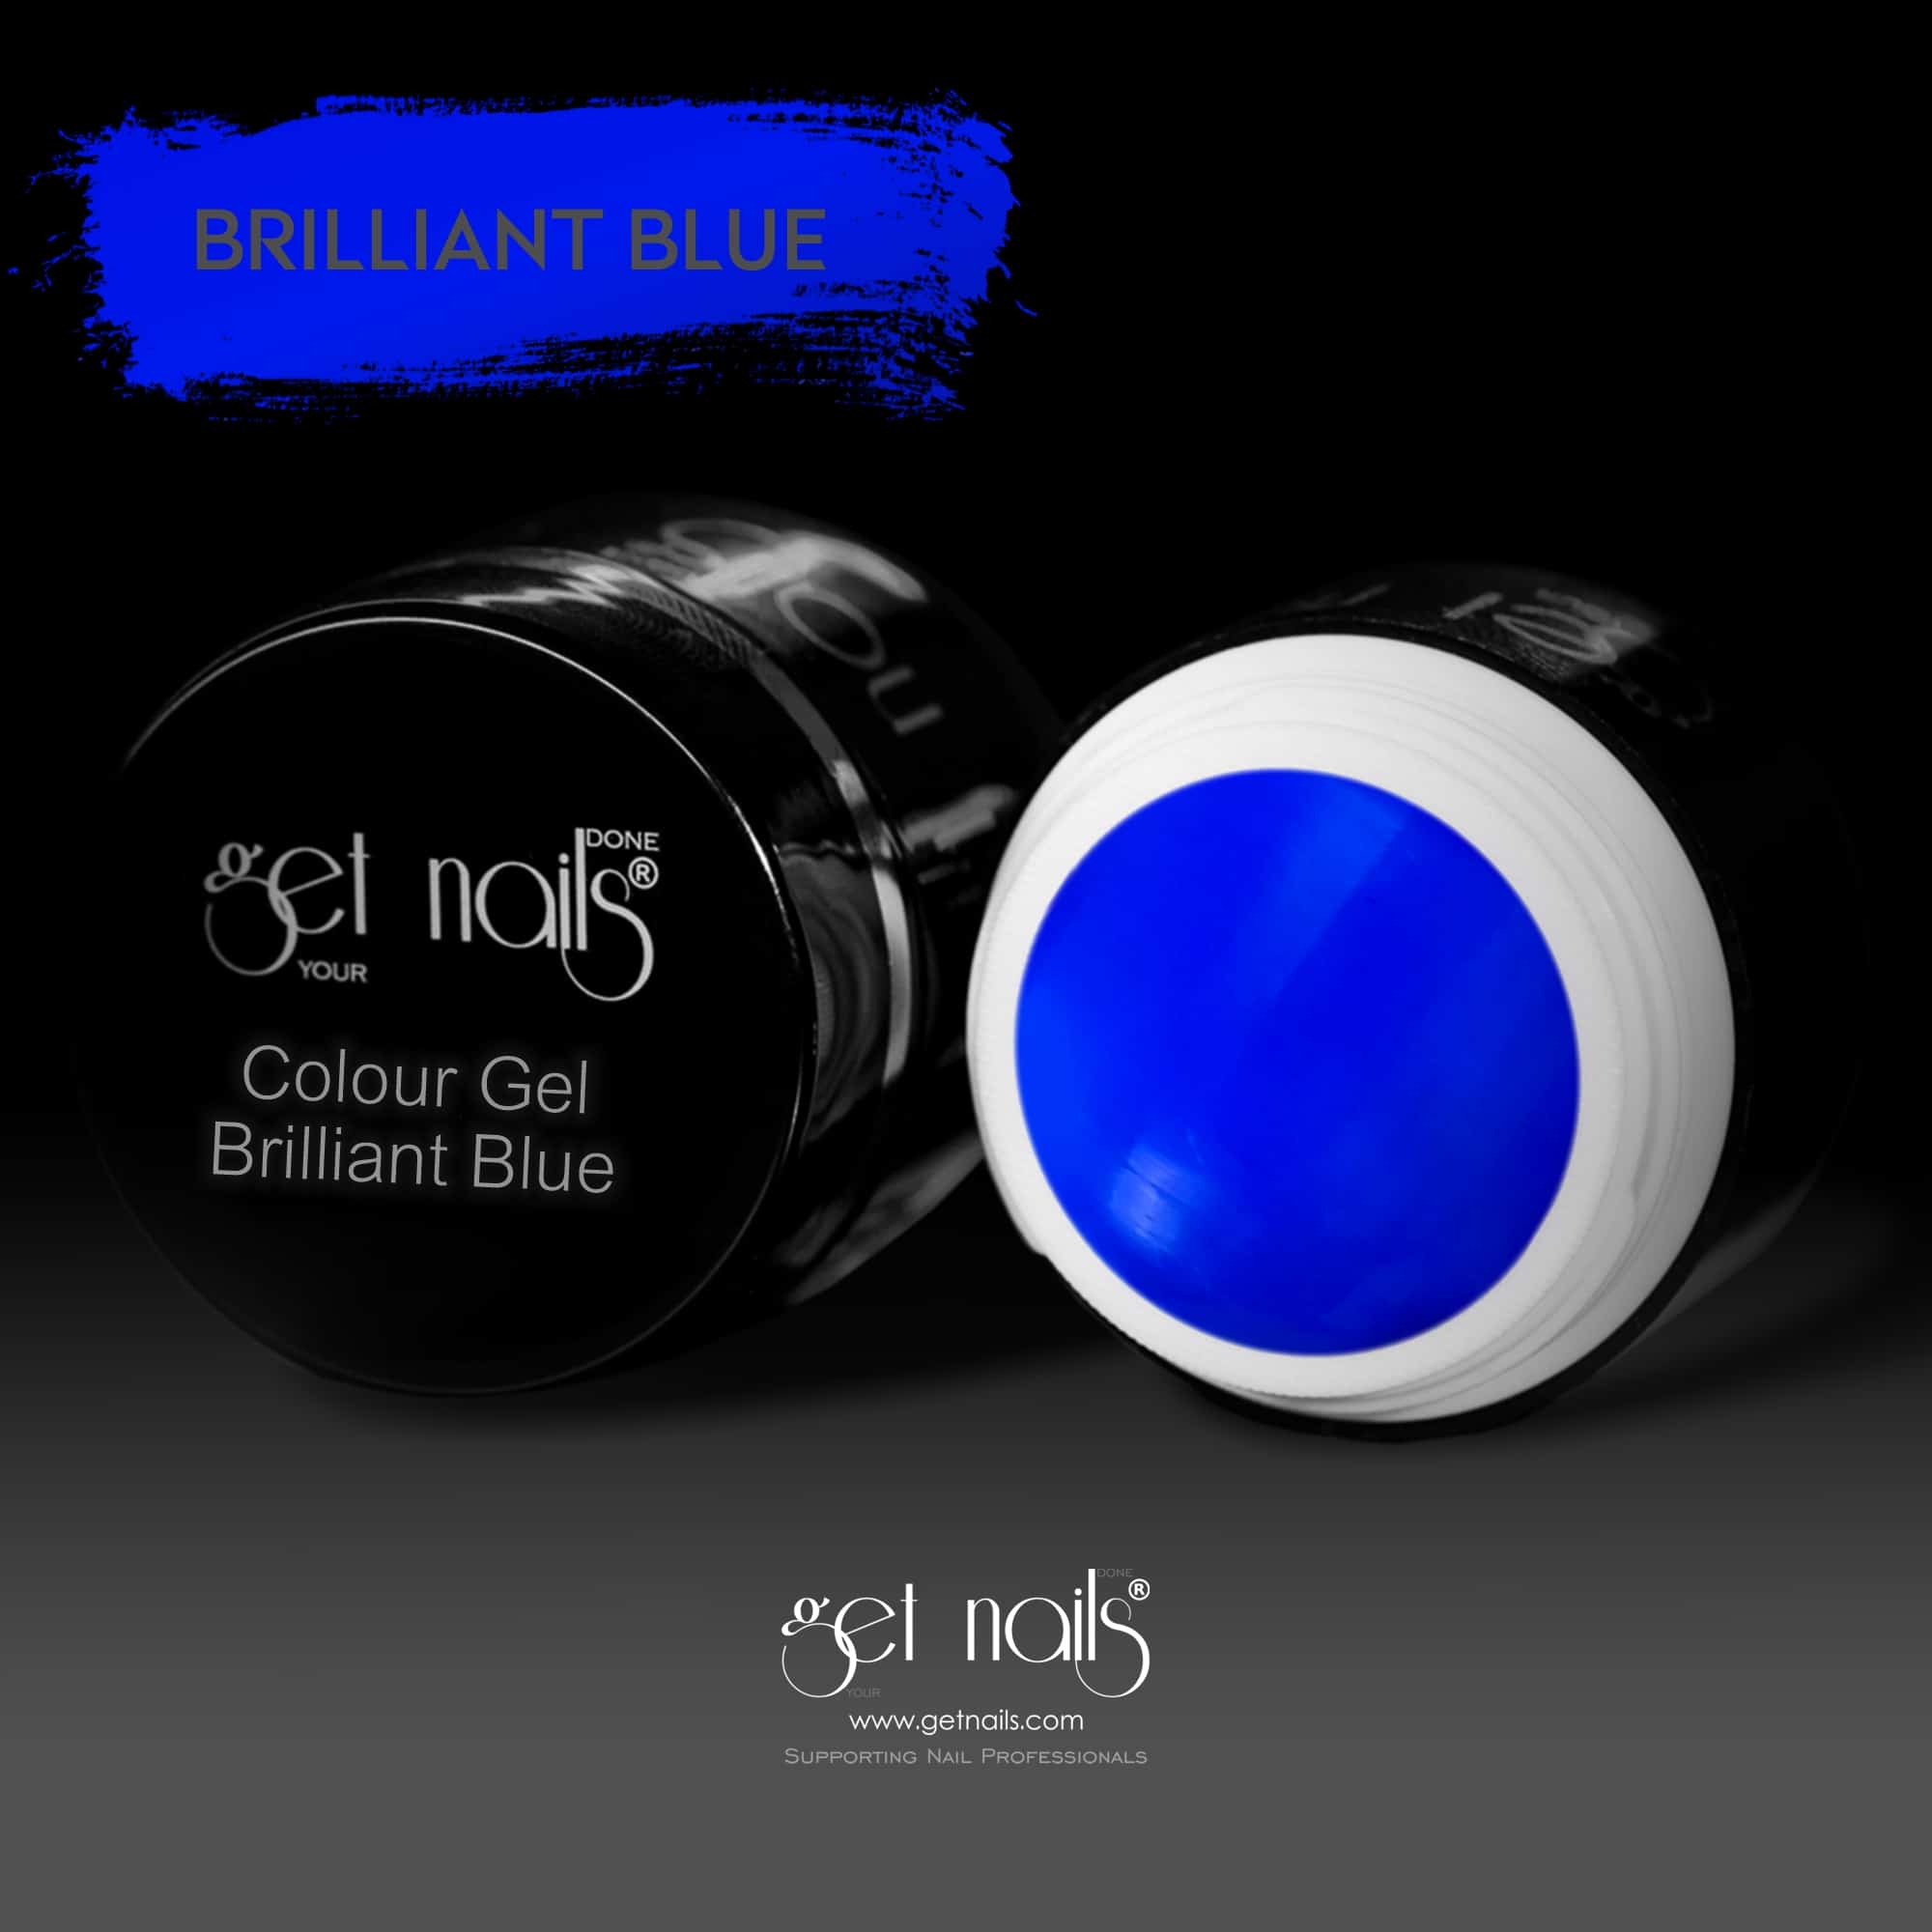 Get Nails Austria - Colour Gel Brilliant Blue 5g